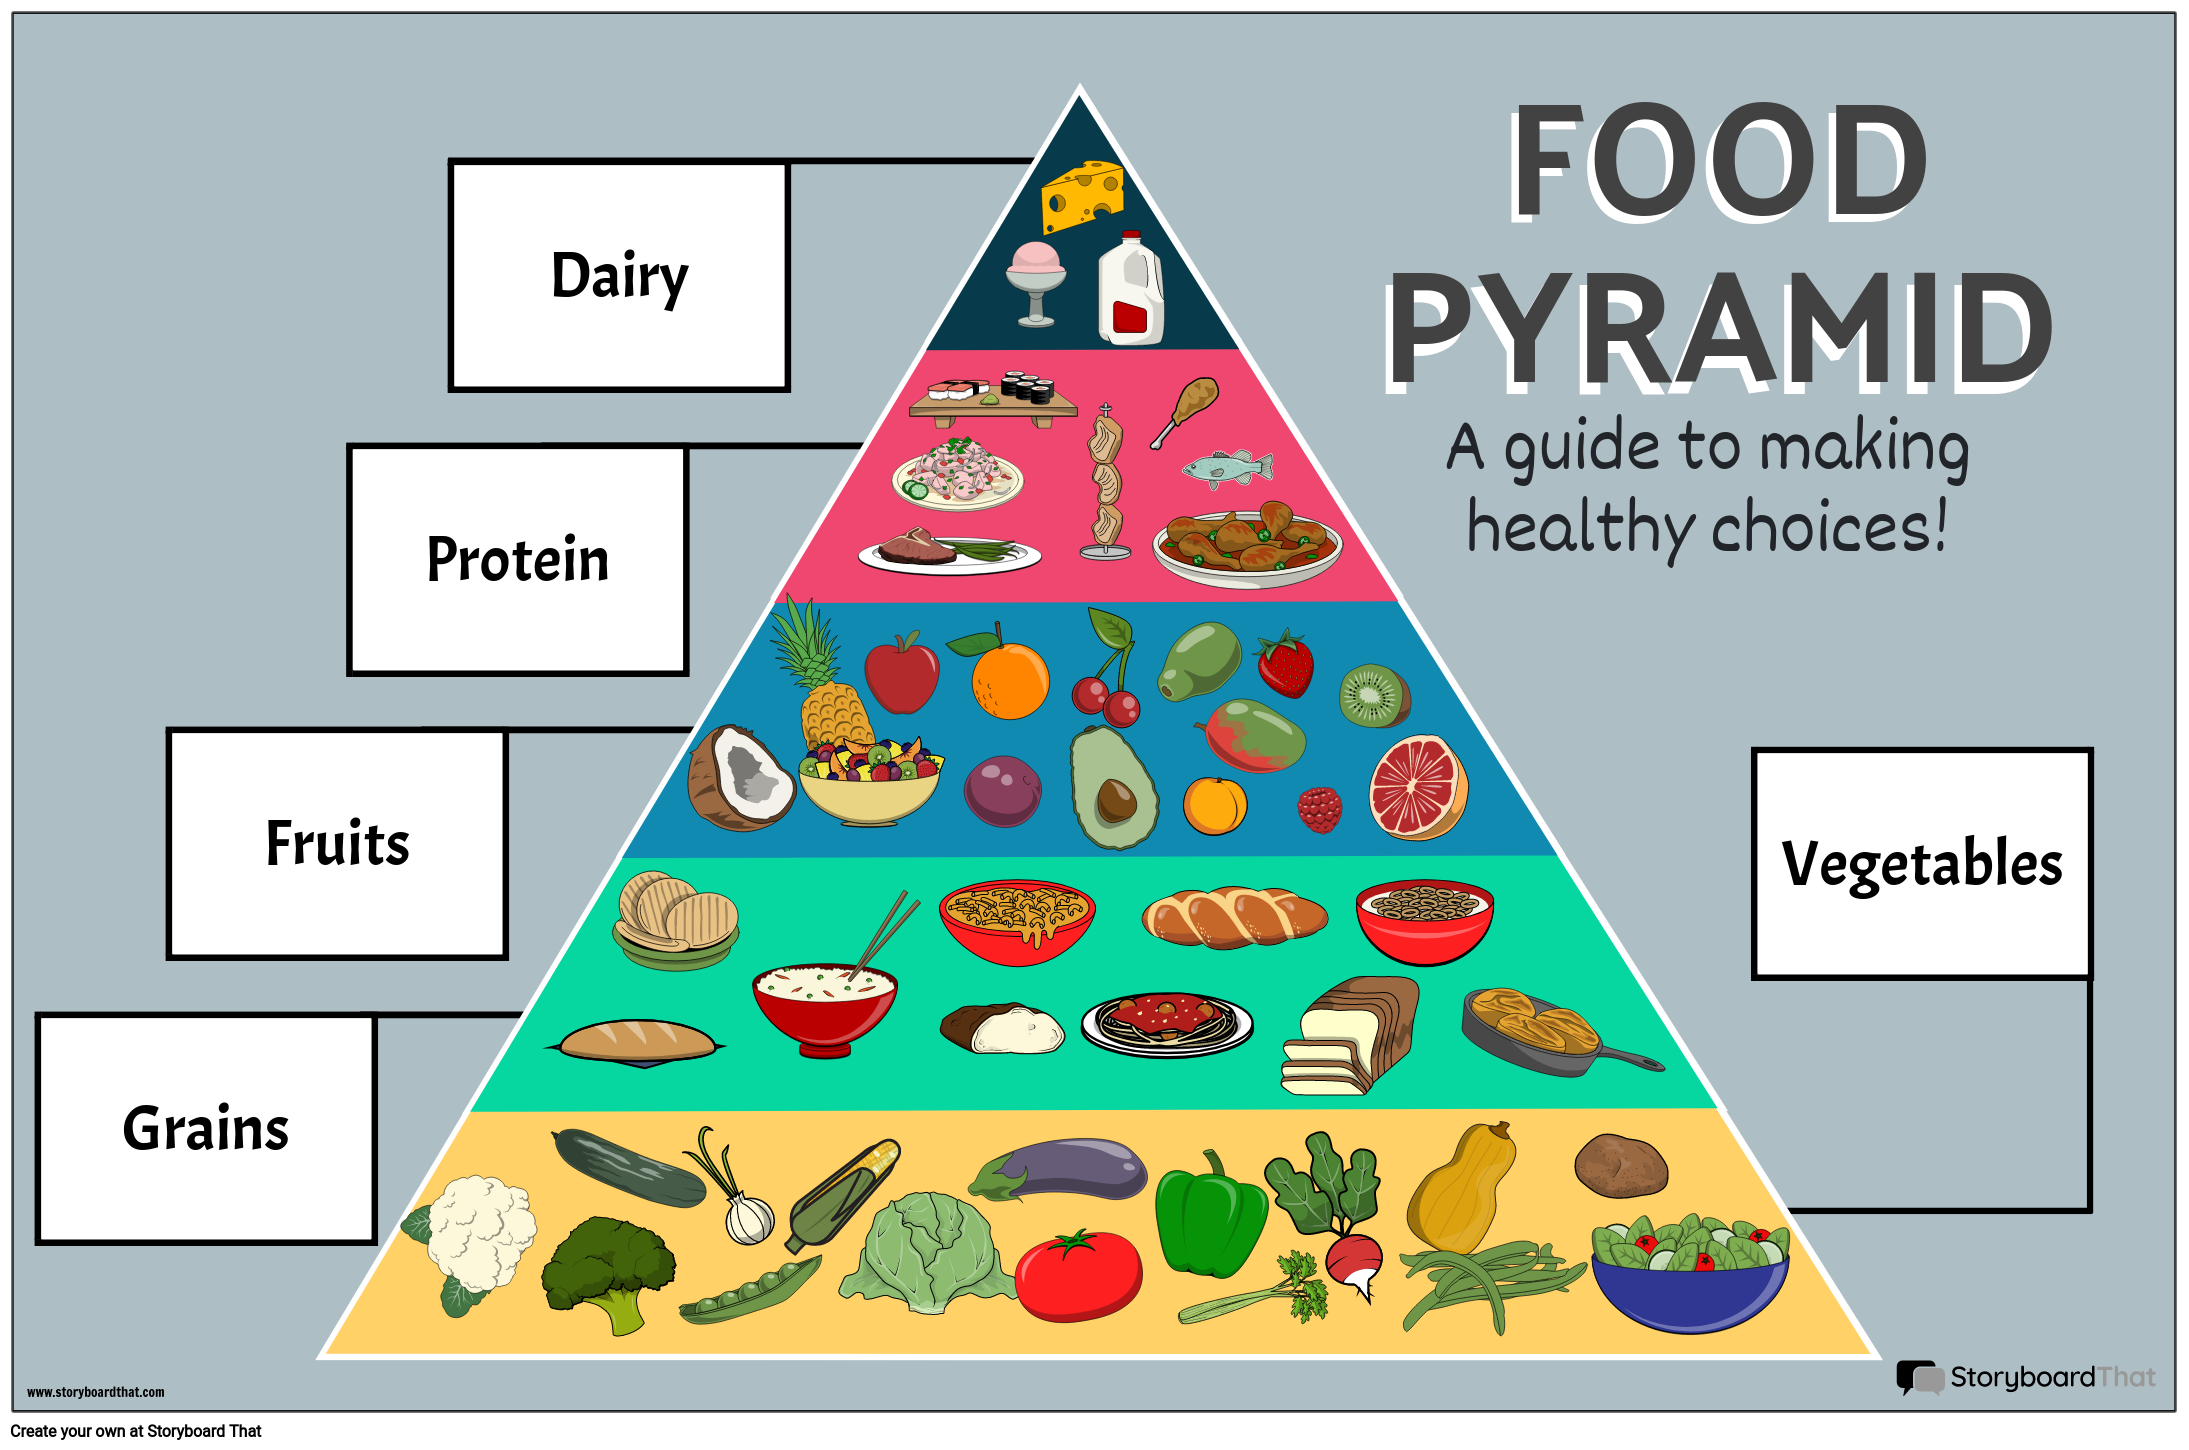 खाद्य पिरामिड उदाहरण